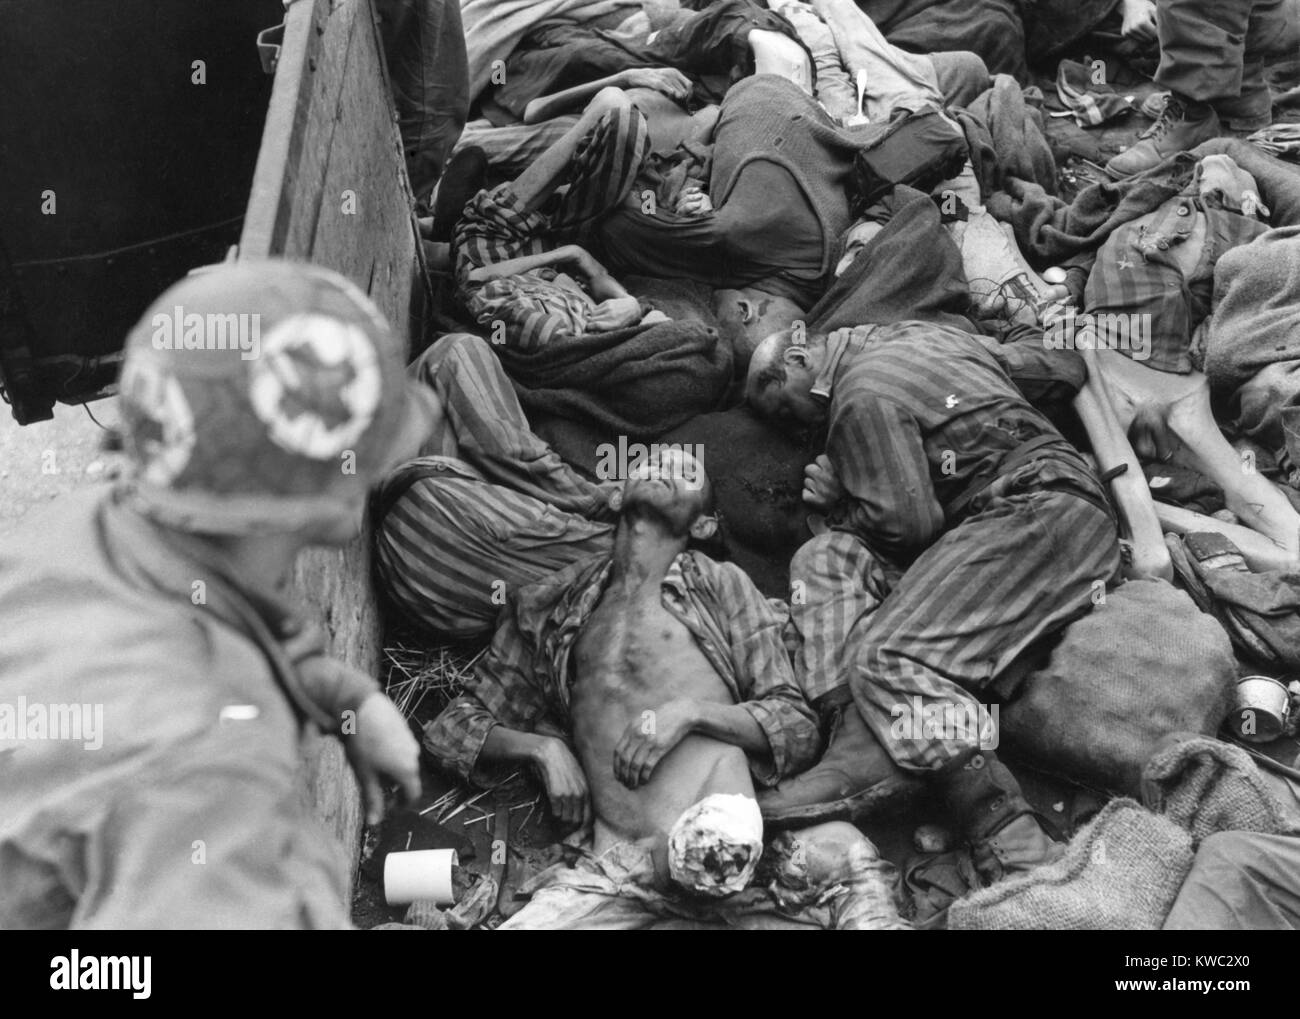 7 US Army Medical Corpsman schaut in Zug Auto mit Erschlagenen oder ausgehungerten Gefangenen gefüllt. Wie Nazideutschland im März 1945 zusammenbrach, SS-Wachen lieferte diese Gremien zu Dachau für die Einäscherung. Viele SS-Wachen im Lager, wie der US-Armee im April 1945 näherte sich verlassen. Weltkrieg 2 (BSLOC 2015 13 13) Stockfoto